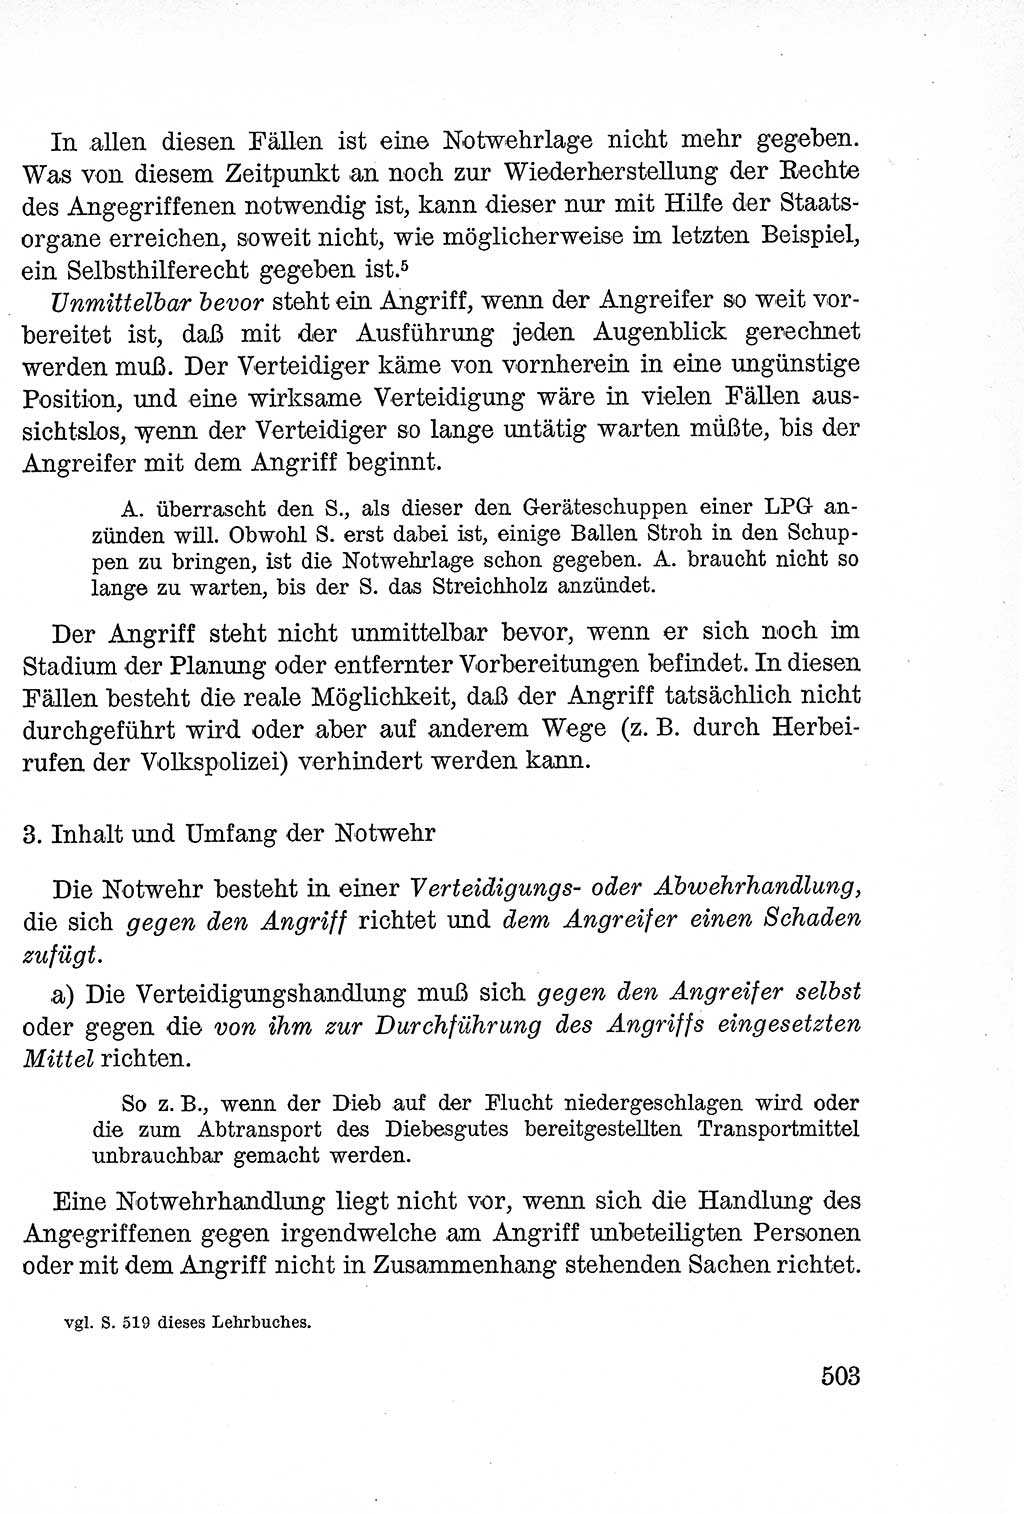 Lehrbuch des Strafrechts der Deutschen Demokratischen Republik (DDR), Allgemeiner Teil 1957, Seite 503 (Lb. Strafr. DDR AT 1957, S. 503)